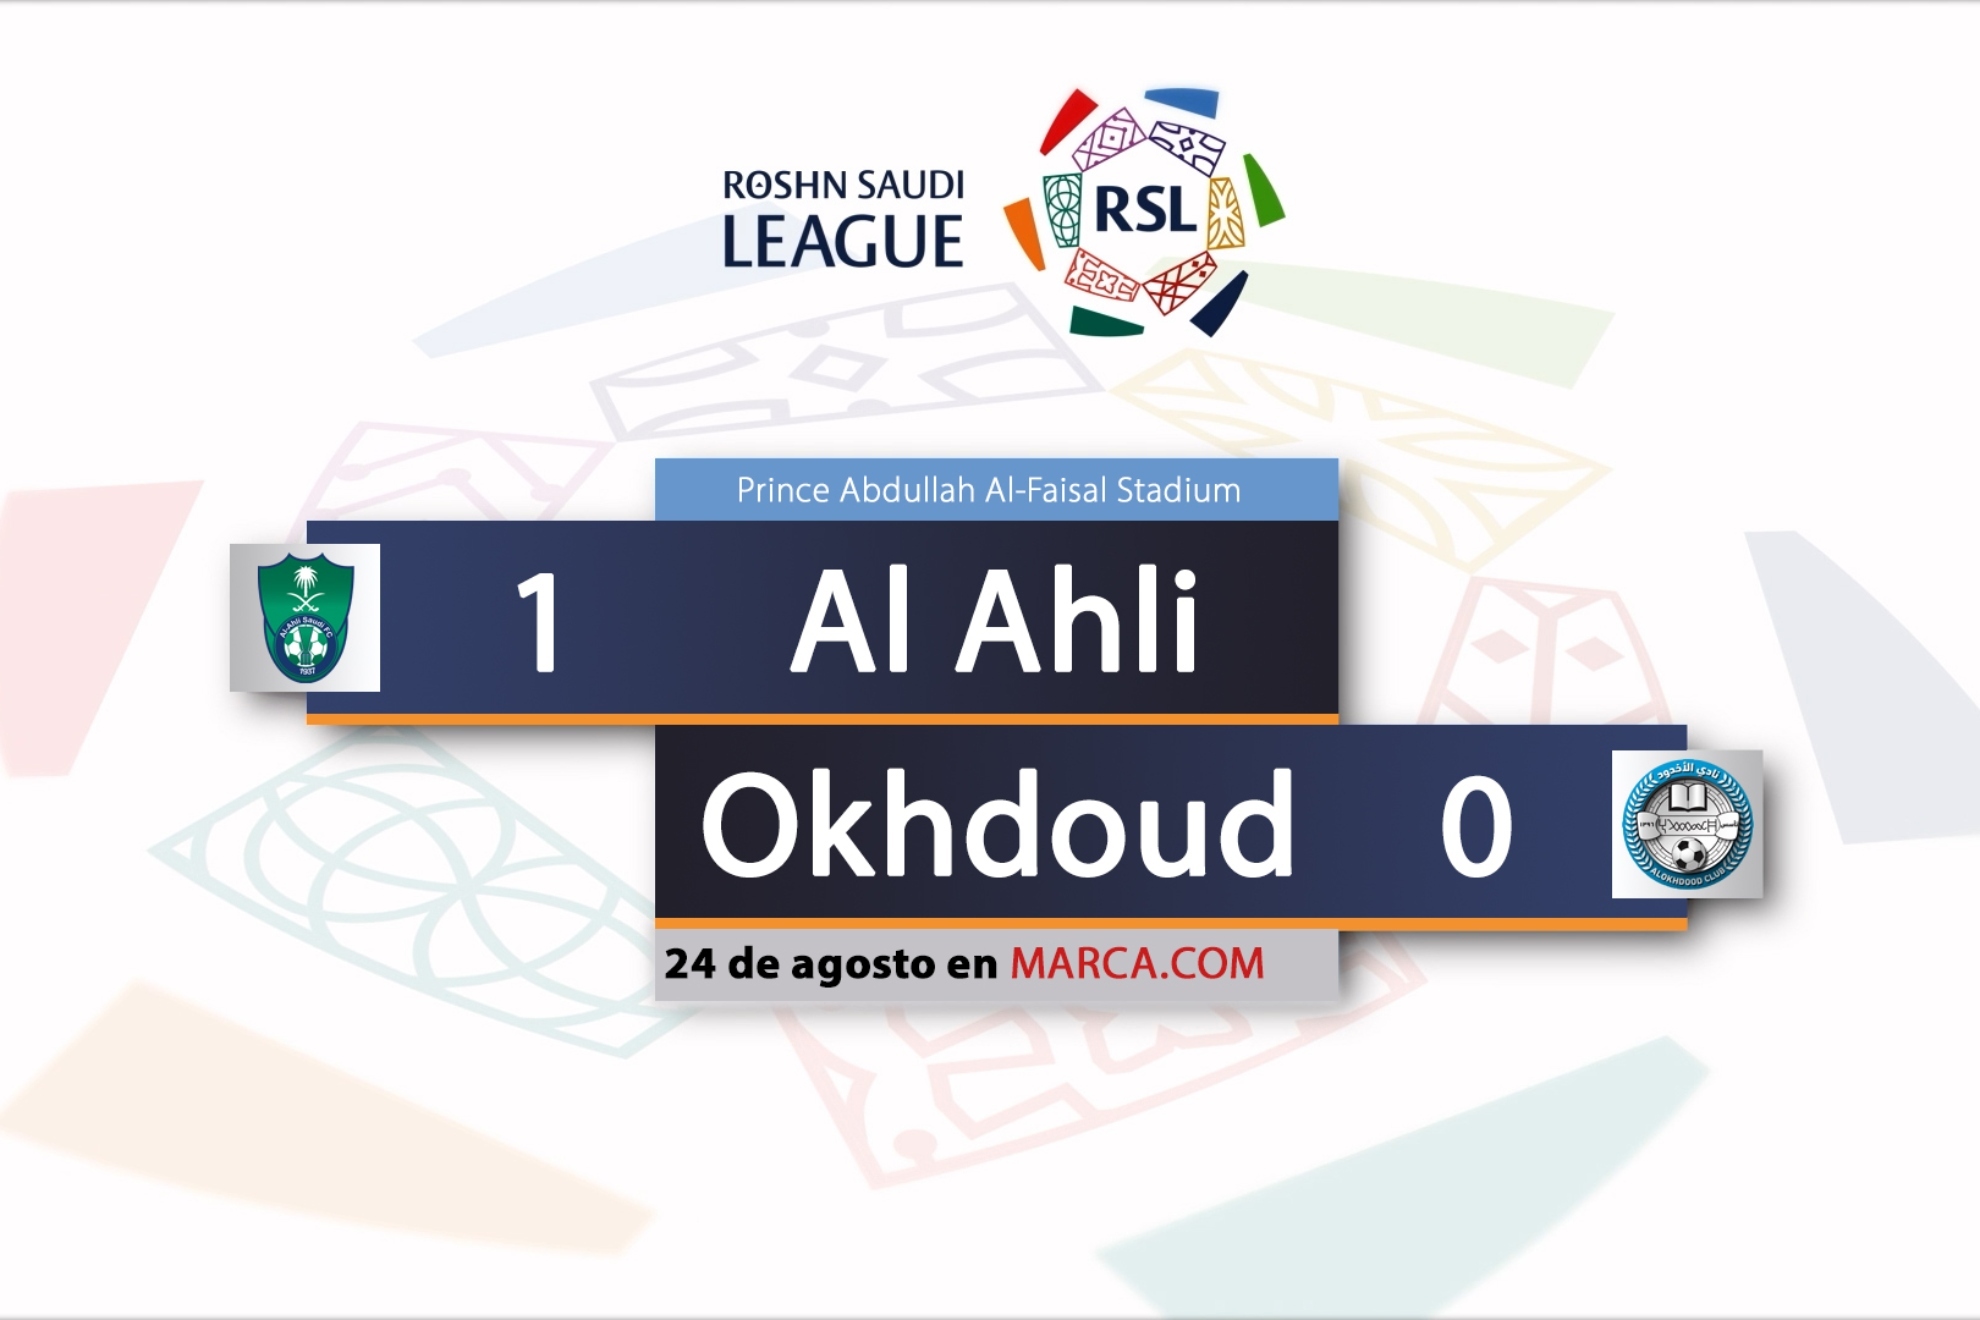 Al Ahli 1-0 Al Okhdoud | Ver online y gratis el partido completo